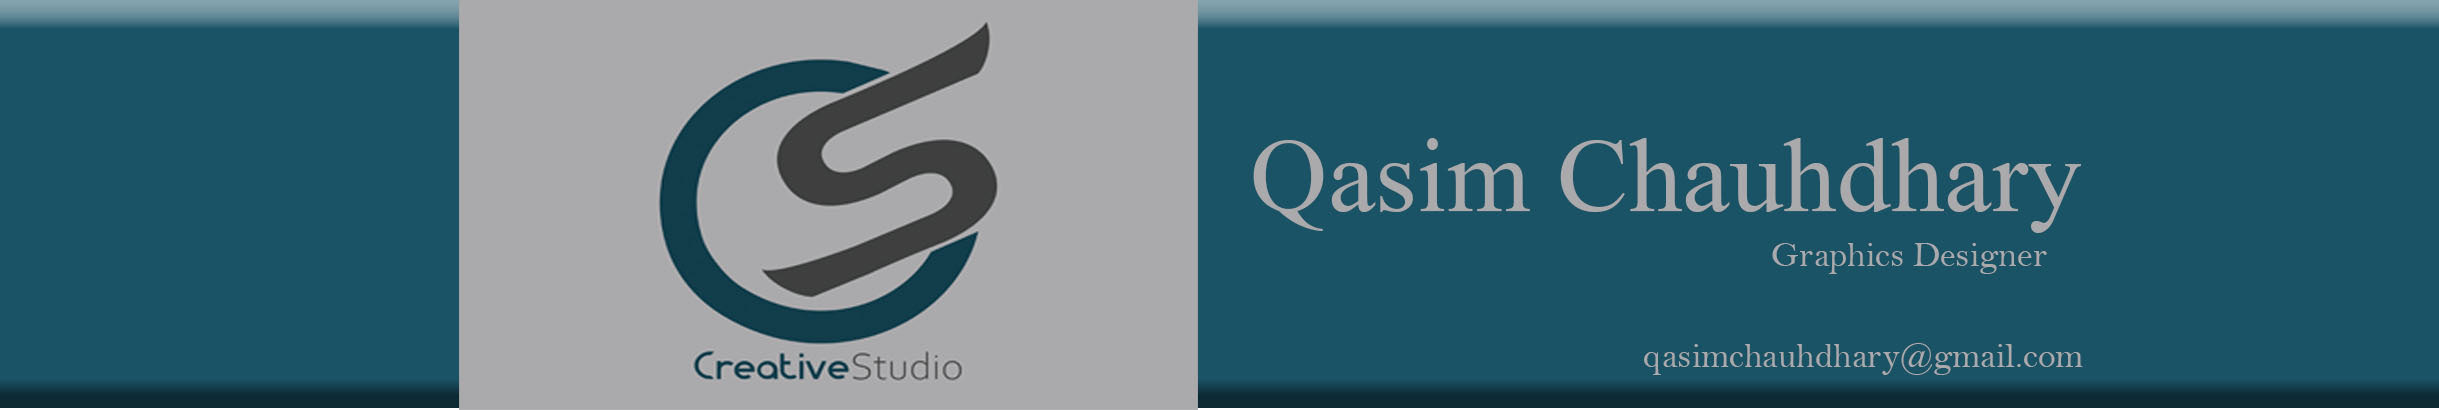 Qasim Chauhdhary's profile banner